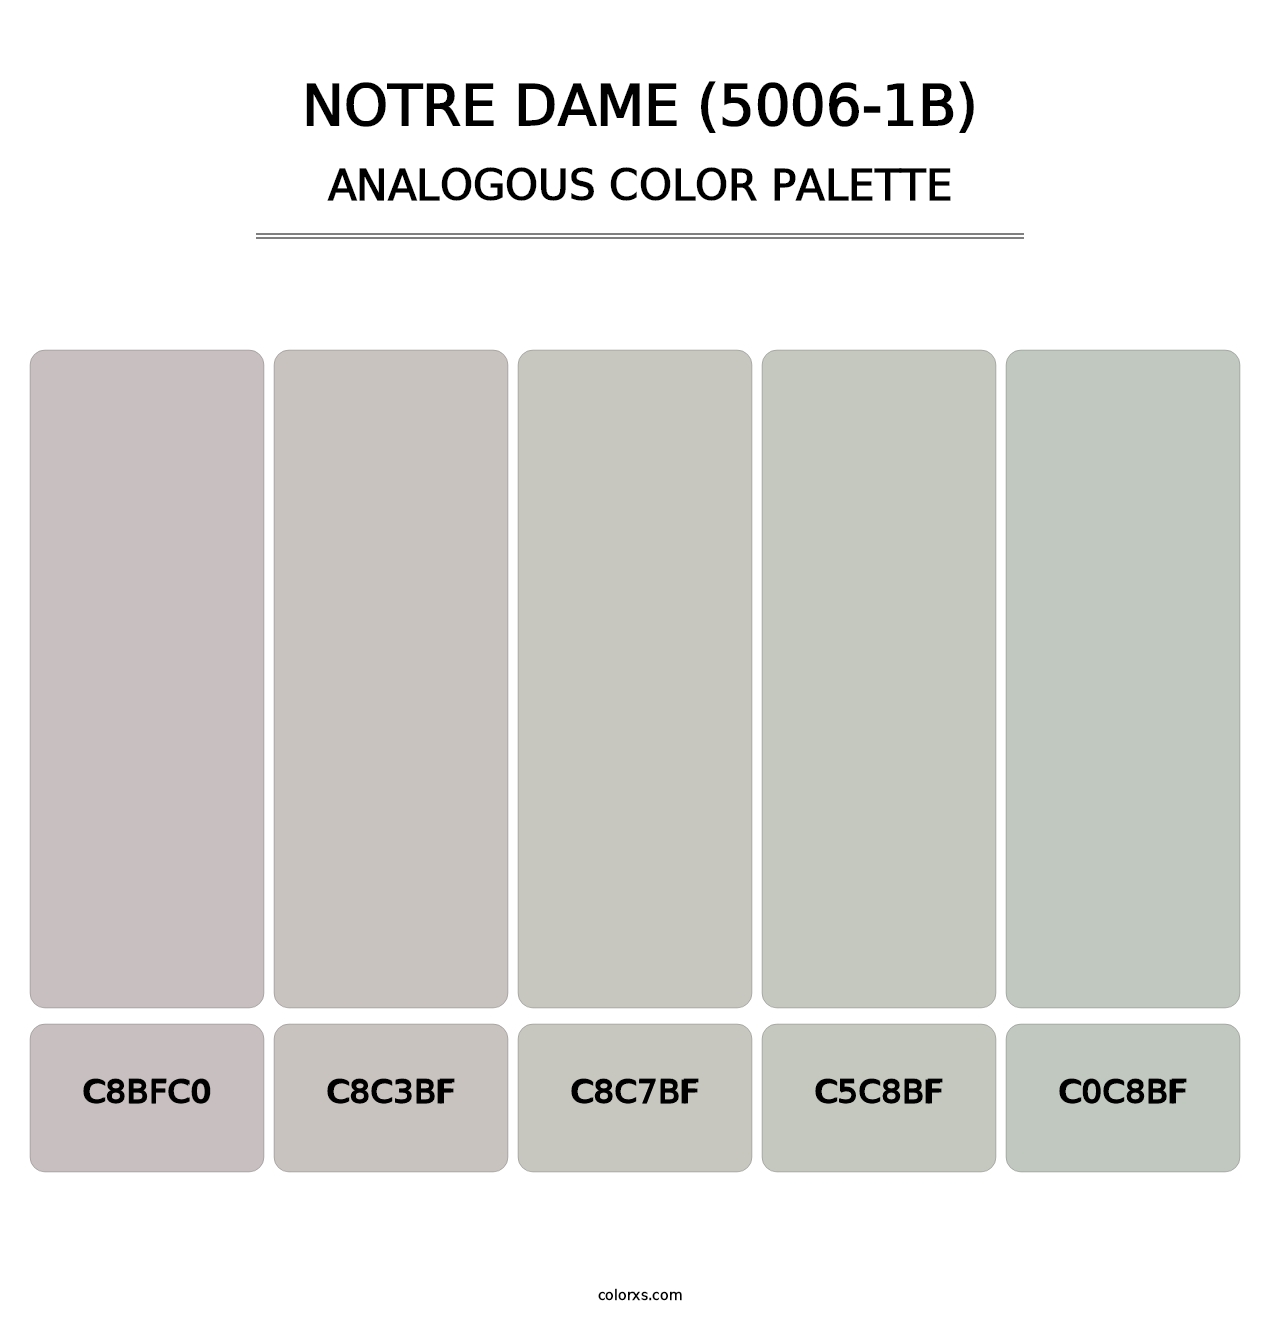 Notre Dame (5006-1B) - Analogous Color Palette